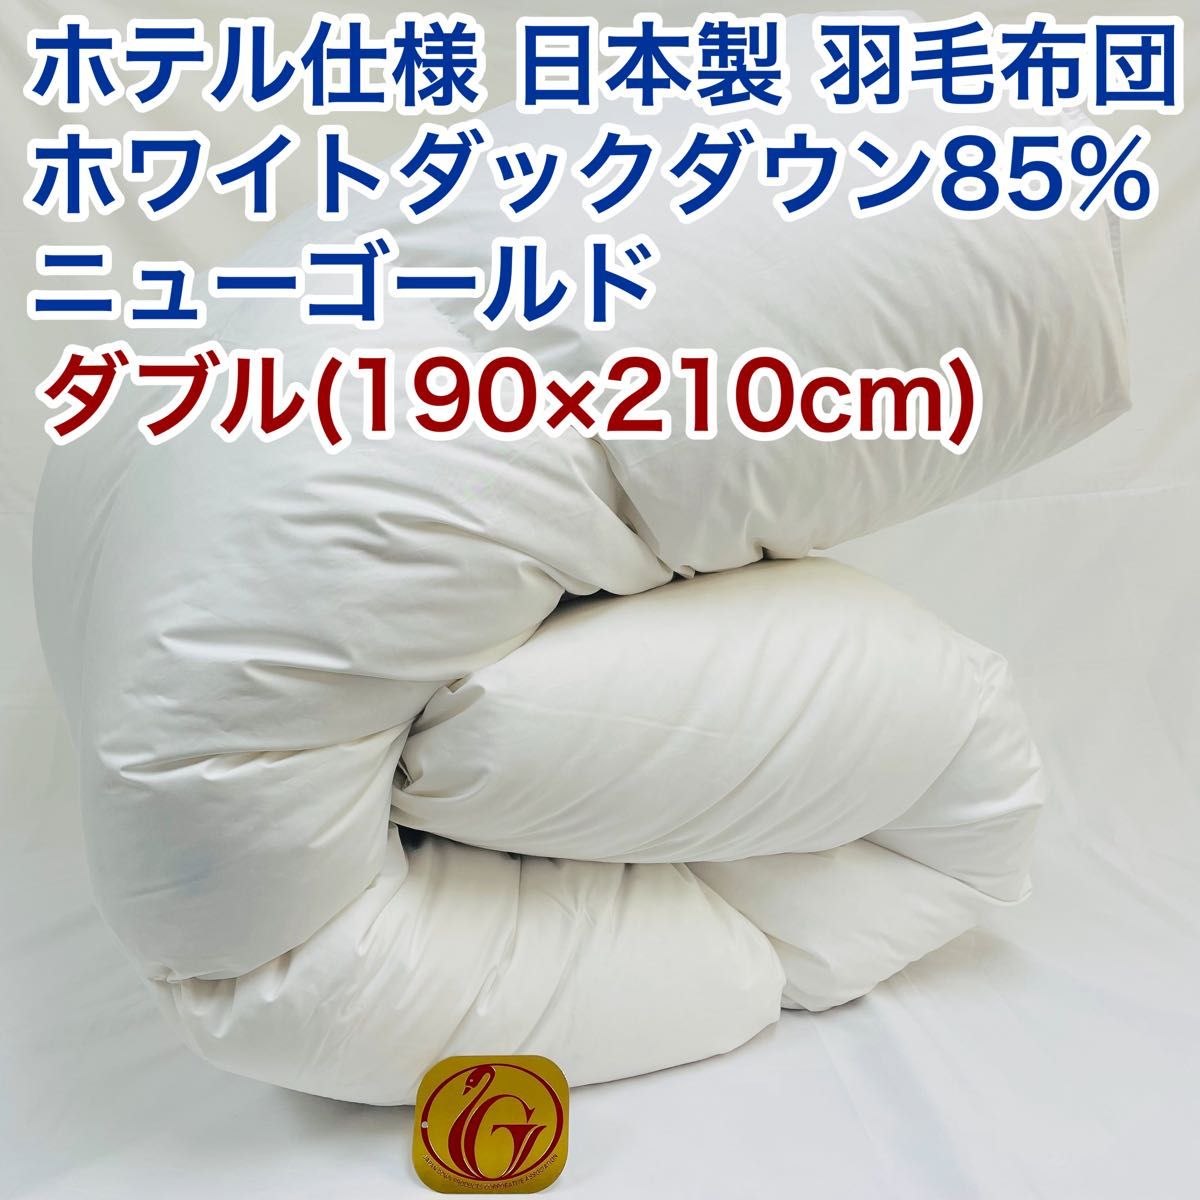 羽毛布団 ダブル ホテル仕様 ニューゴールド 日本製 190×210cm